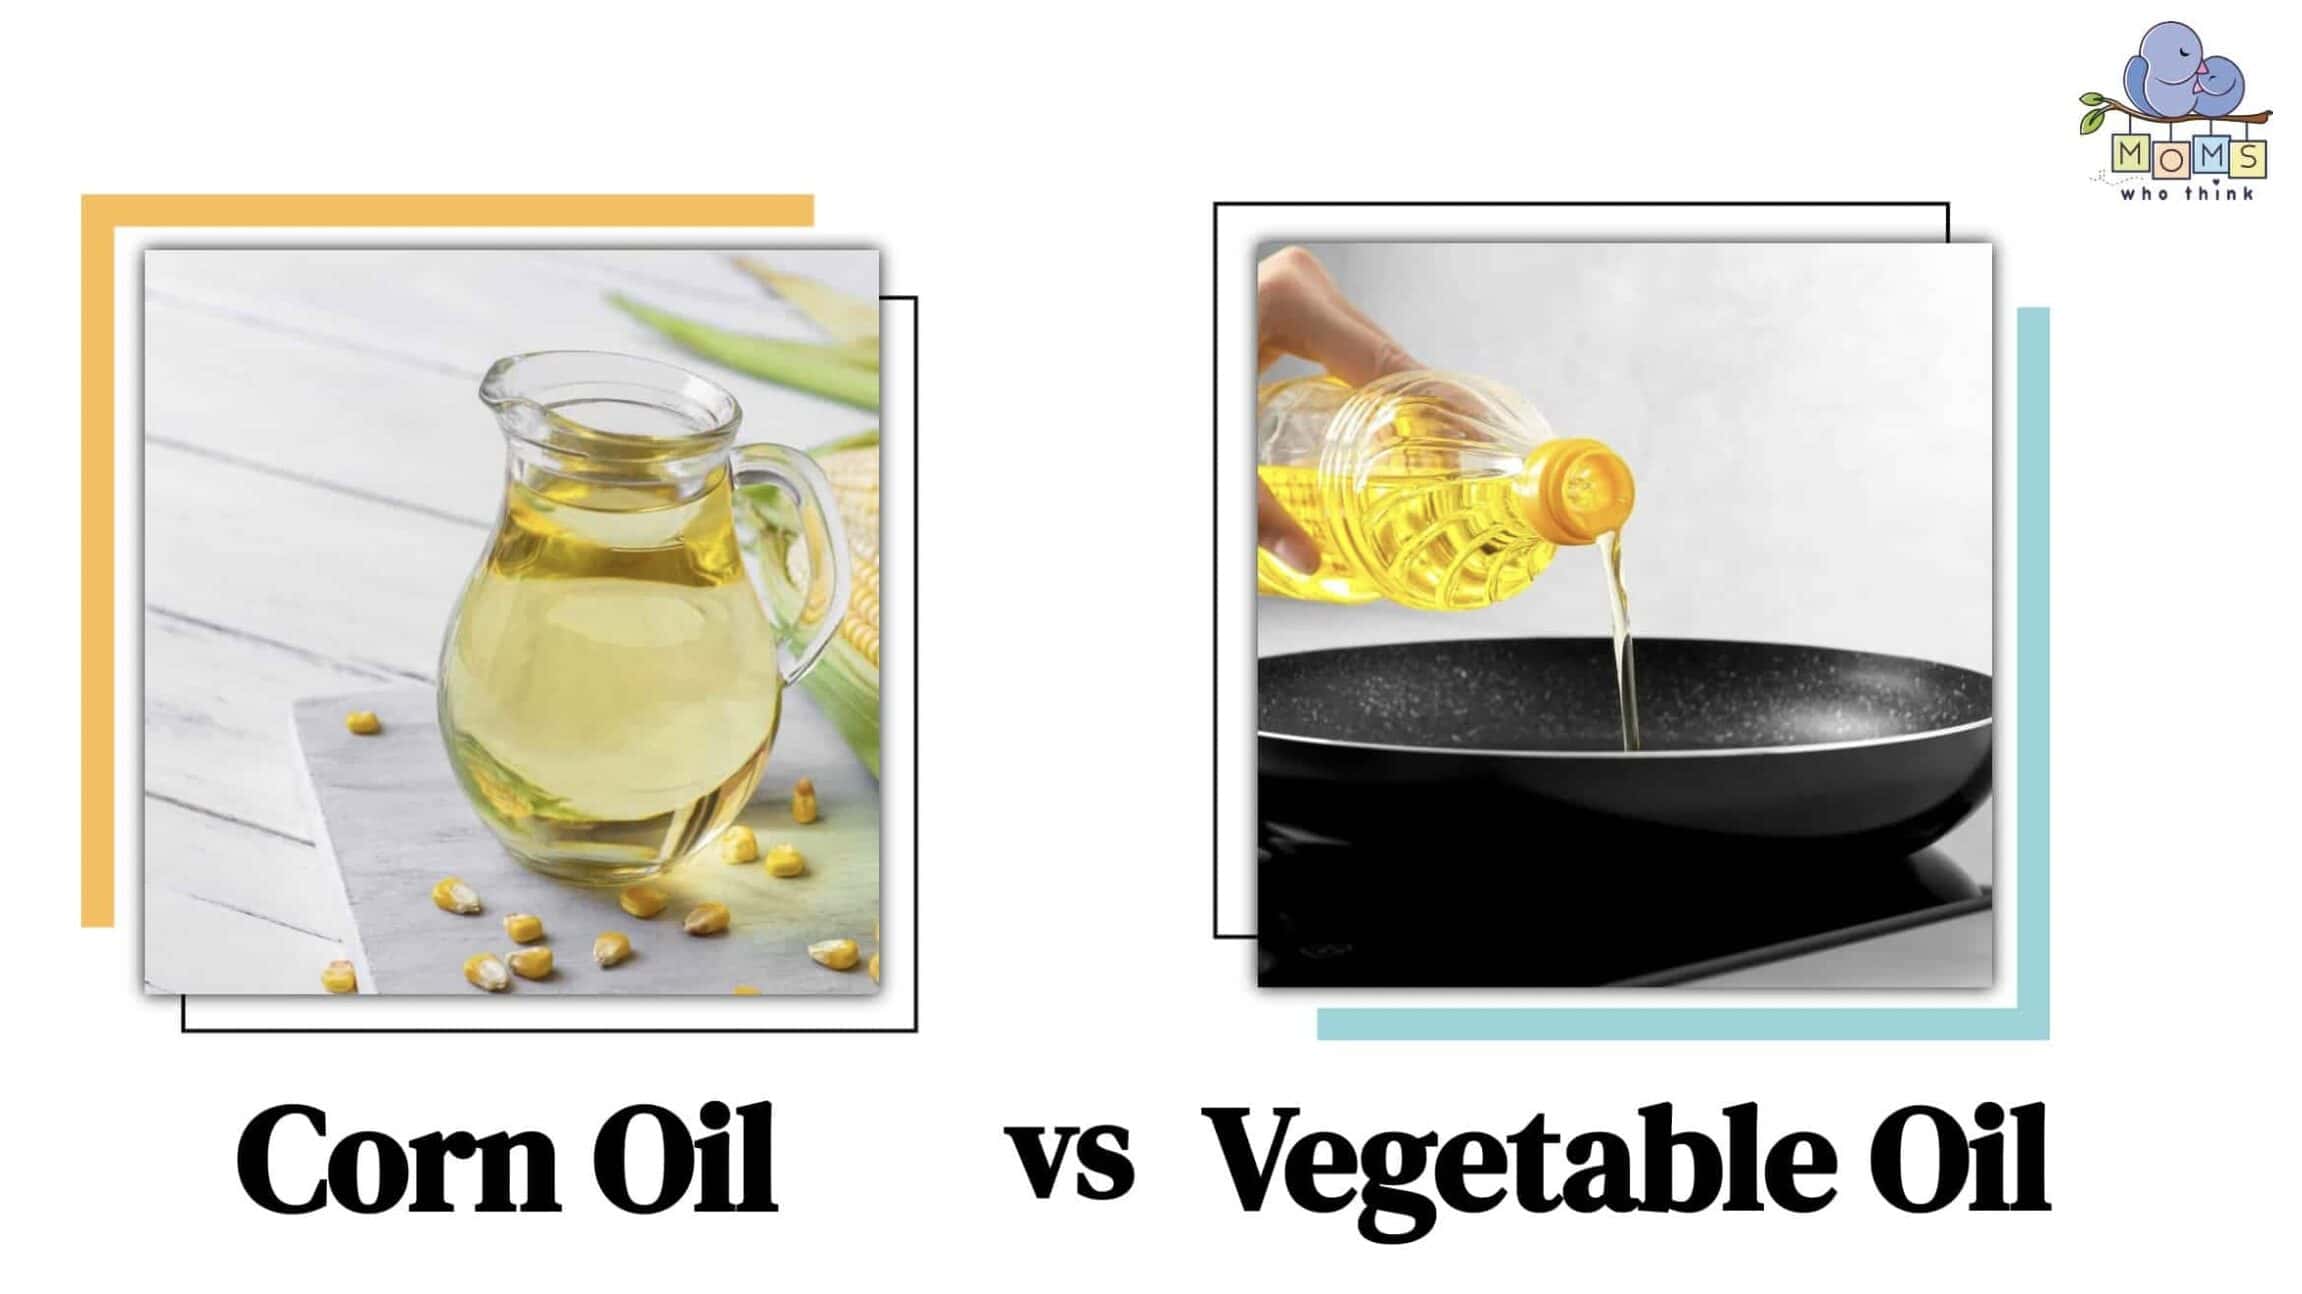 Corn Oil vs. Vegetable Oil